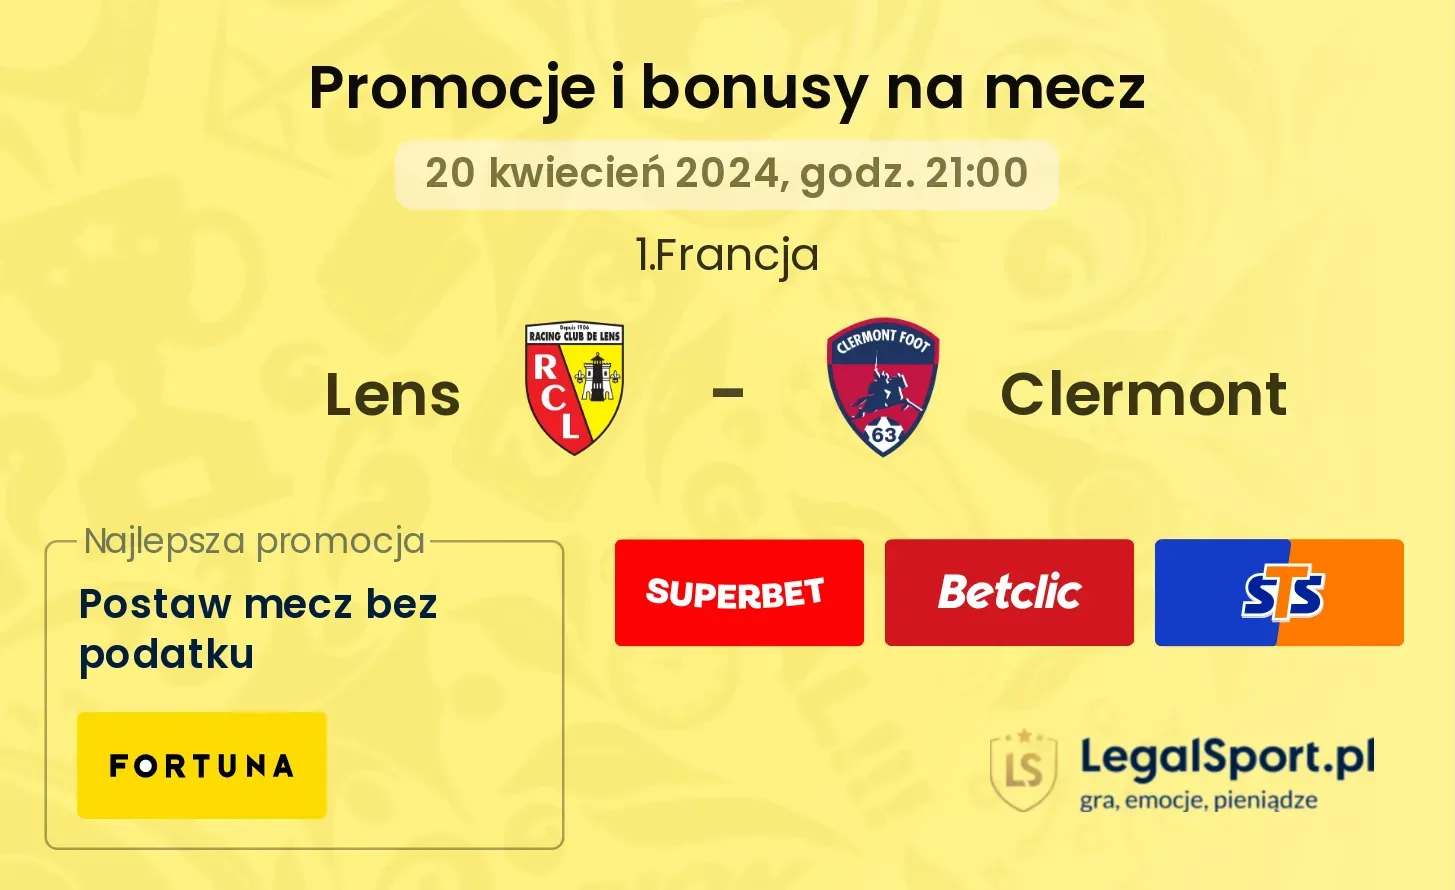 Lens - Clermont promocje bonusy na mecz